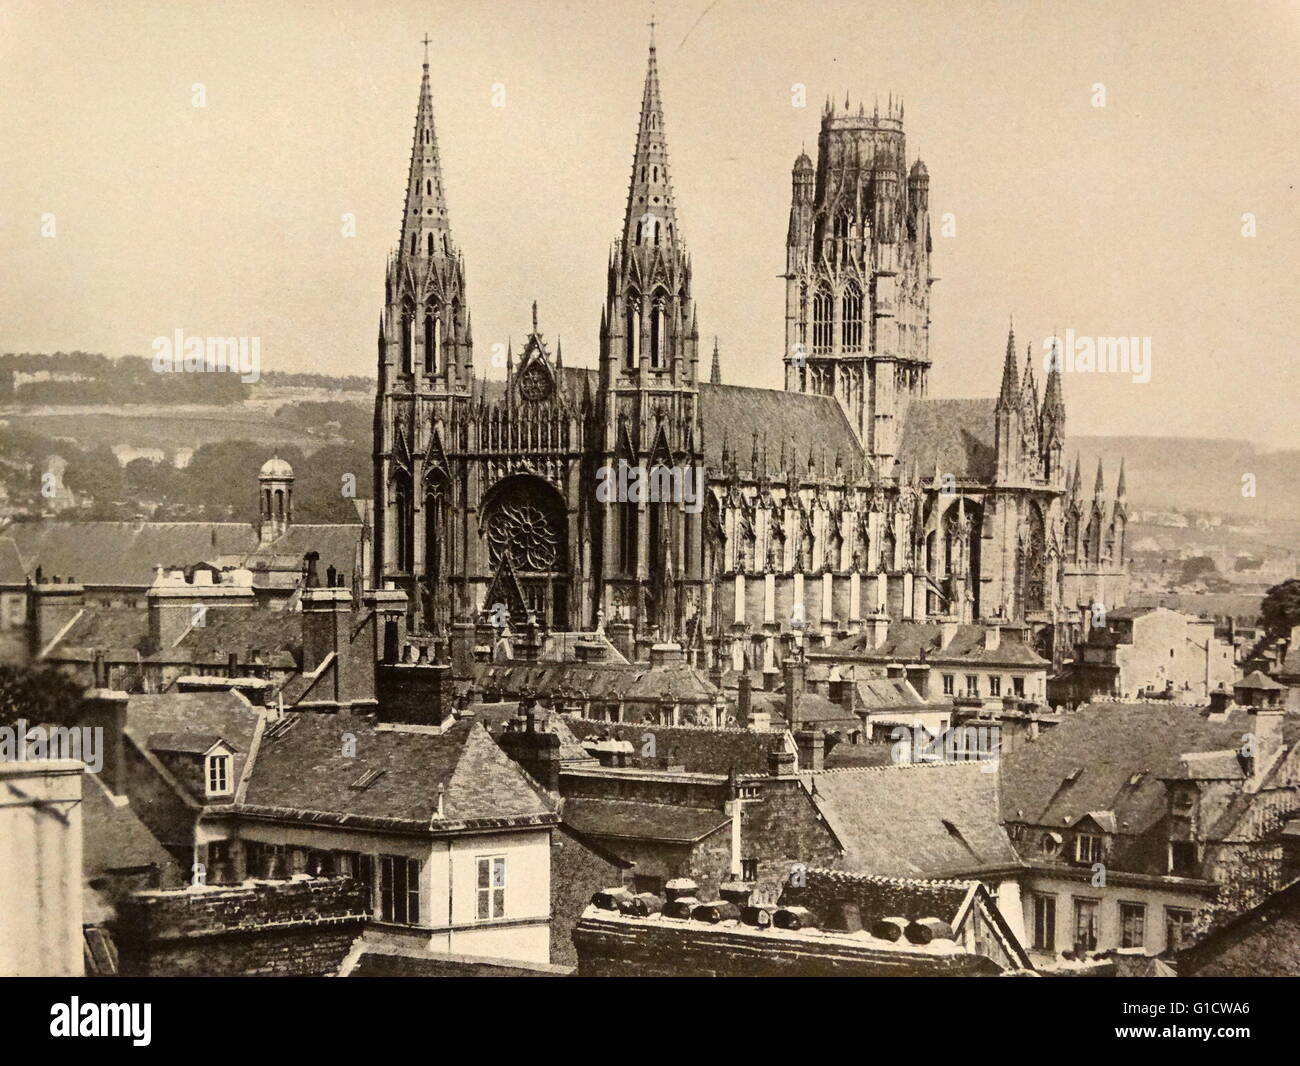 Fotodruck von der Kirche St. Ouen, eine große gotische römisch-katholische Kirche in Rouen, Frankreich. Vom 19. Jahrhundert Stockfoto